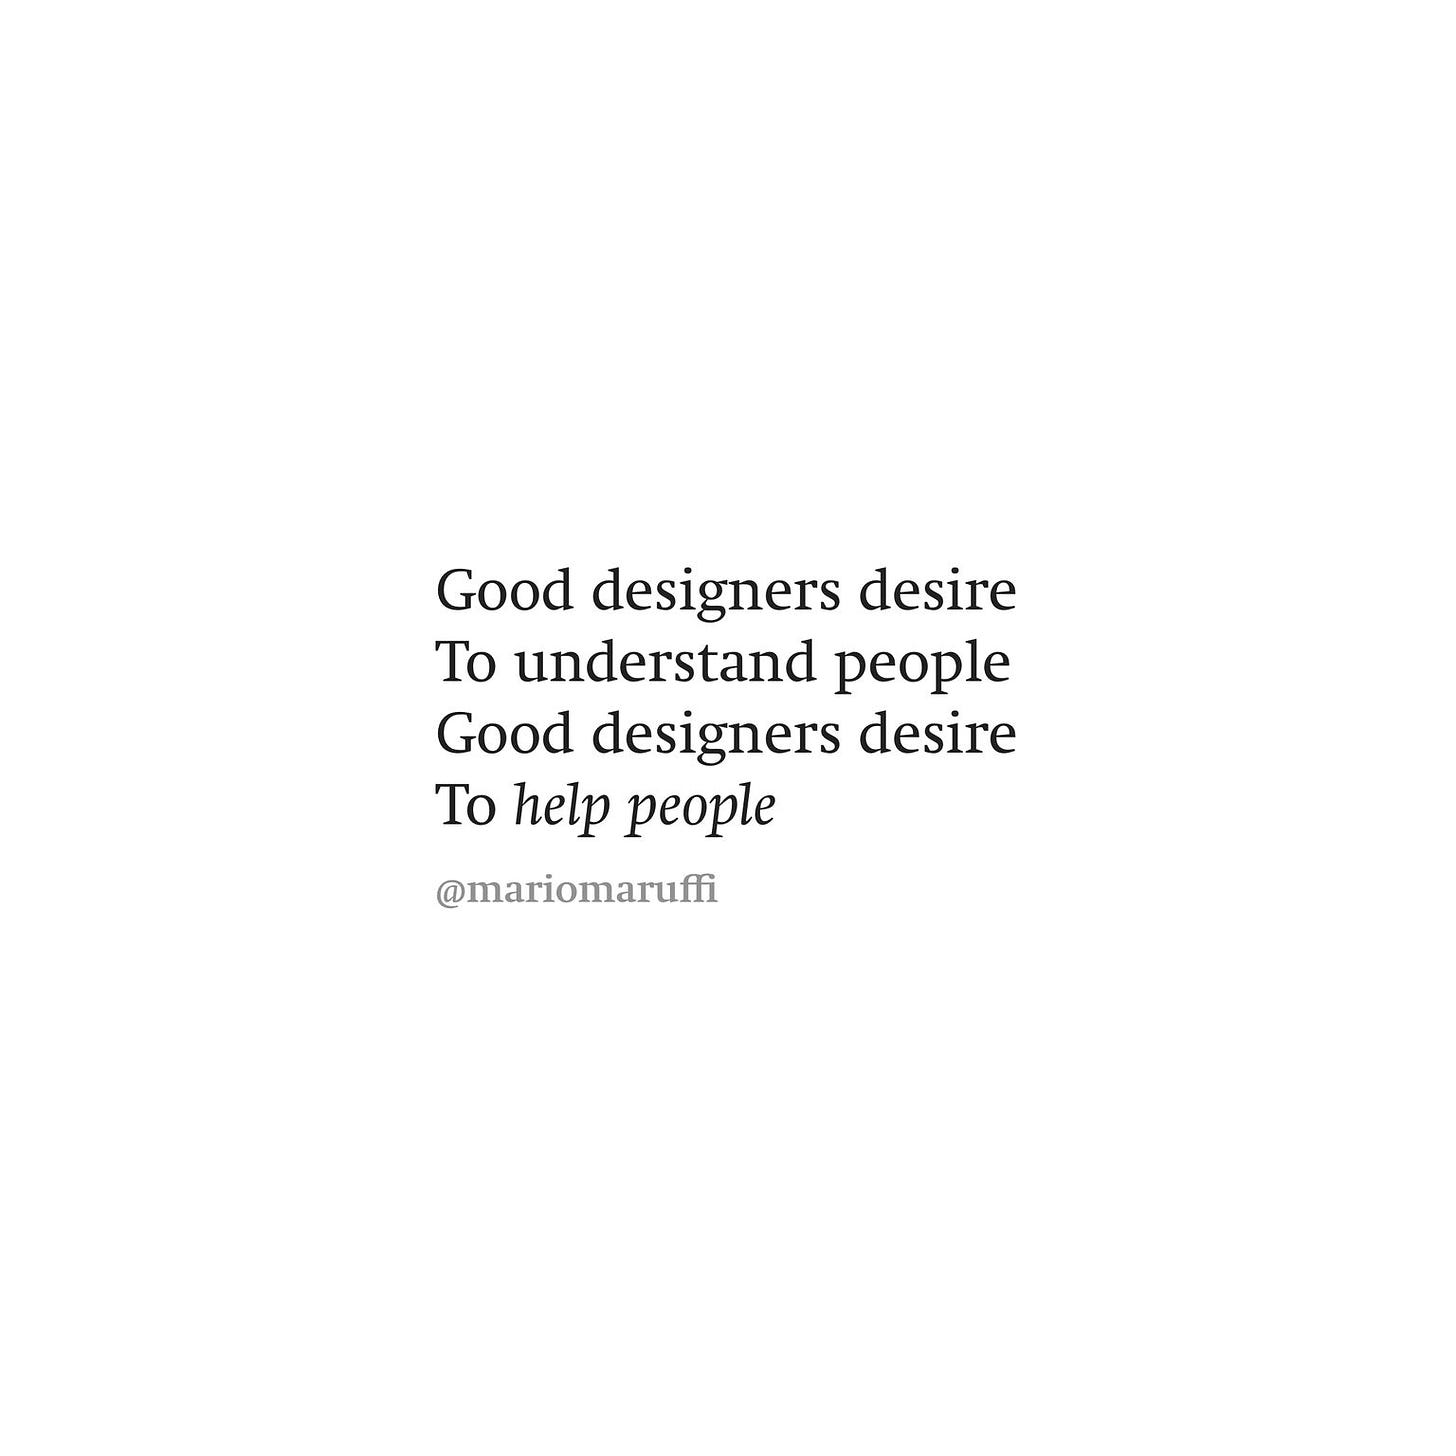 Good designers desire to understand people. Good designers desire to help people.